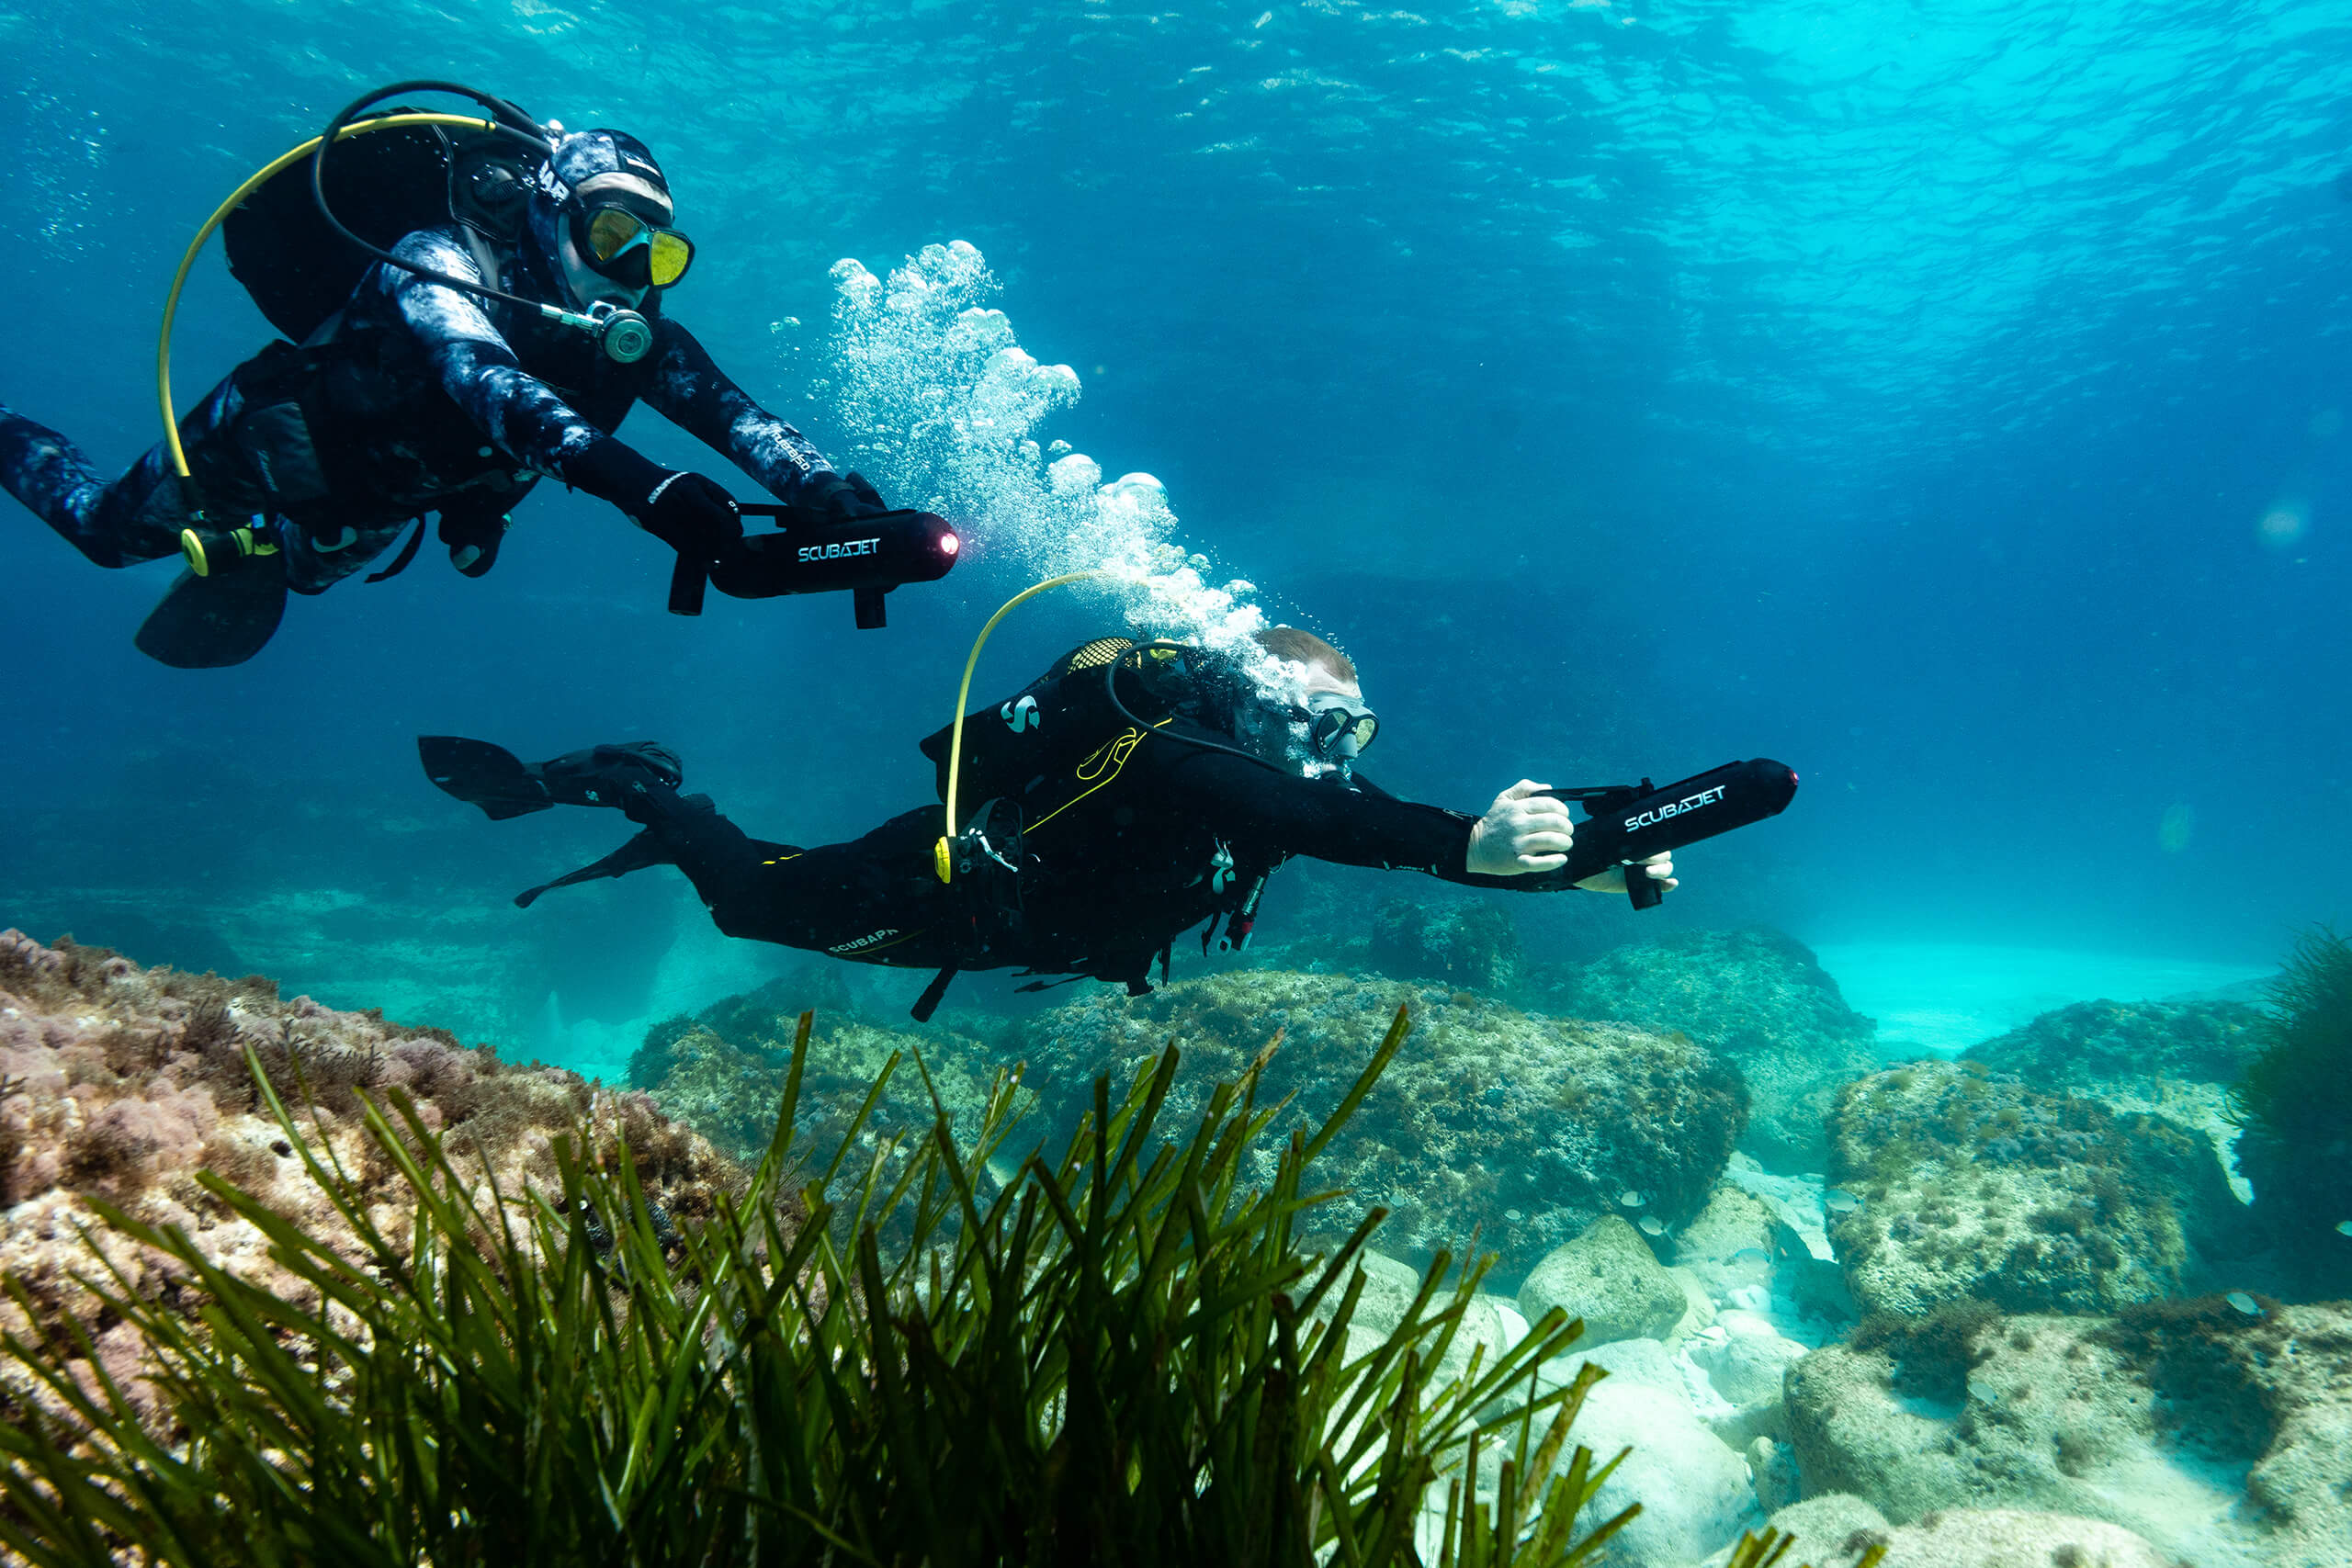 https://www.scubajet.com/media/%C2%A9SCUBAJET-Two-divers-in-the-water-with-the-SCUBAJET-PRO-Underwater-Kit.jpg